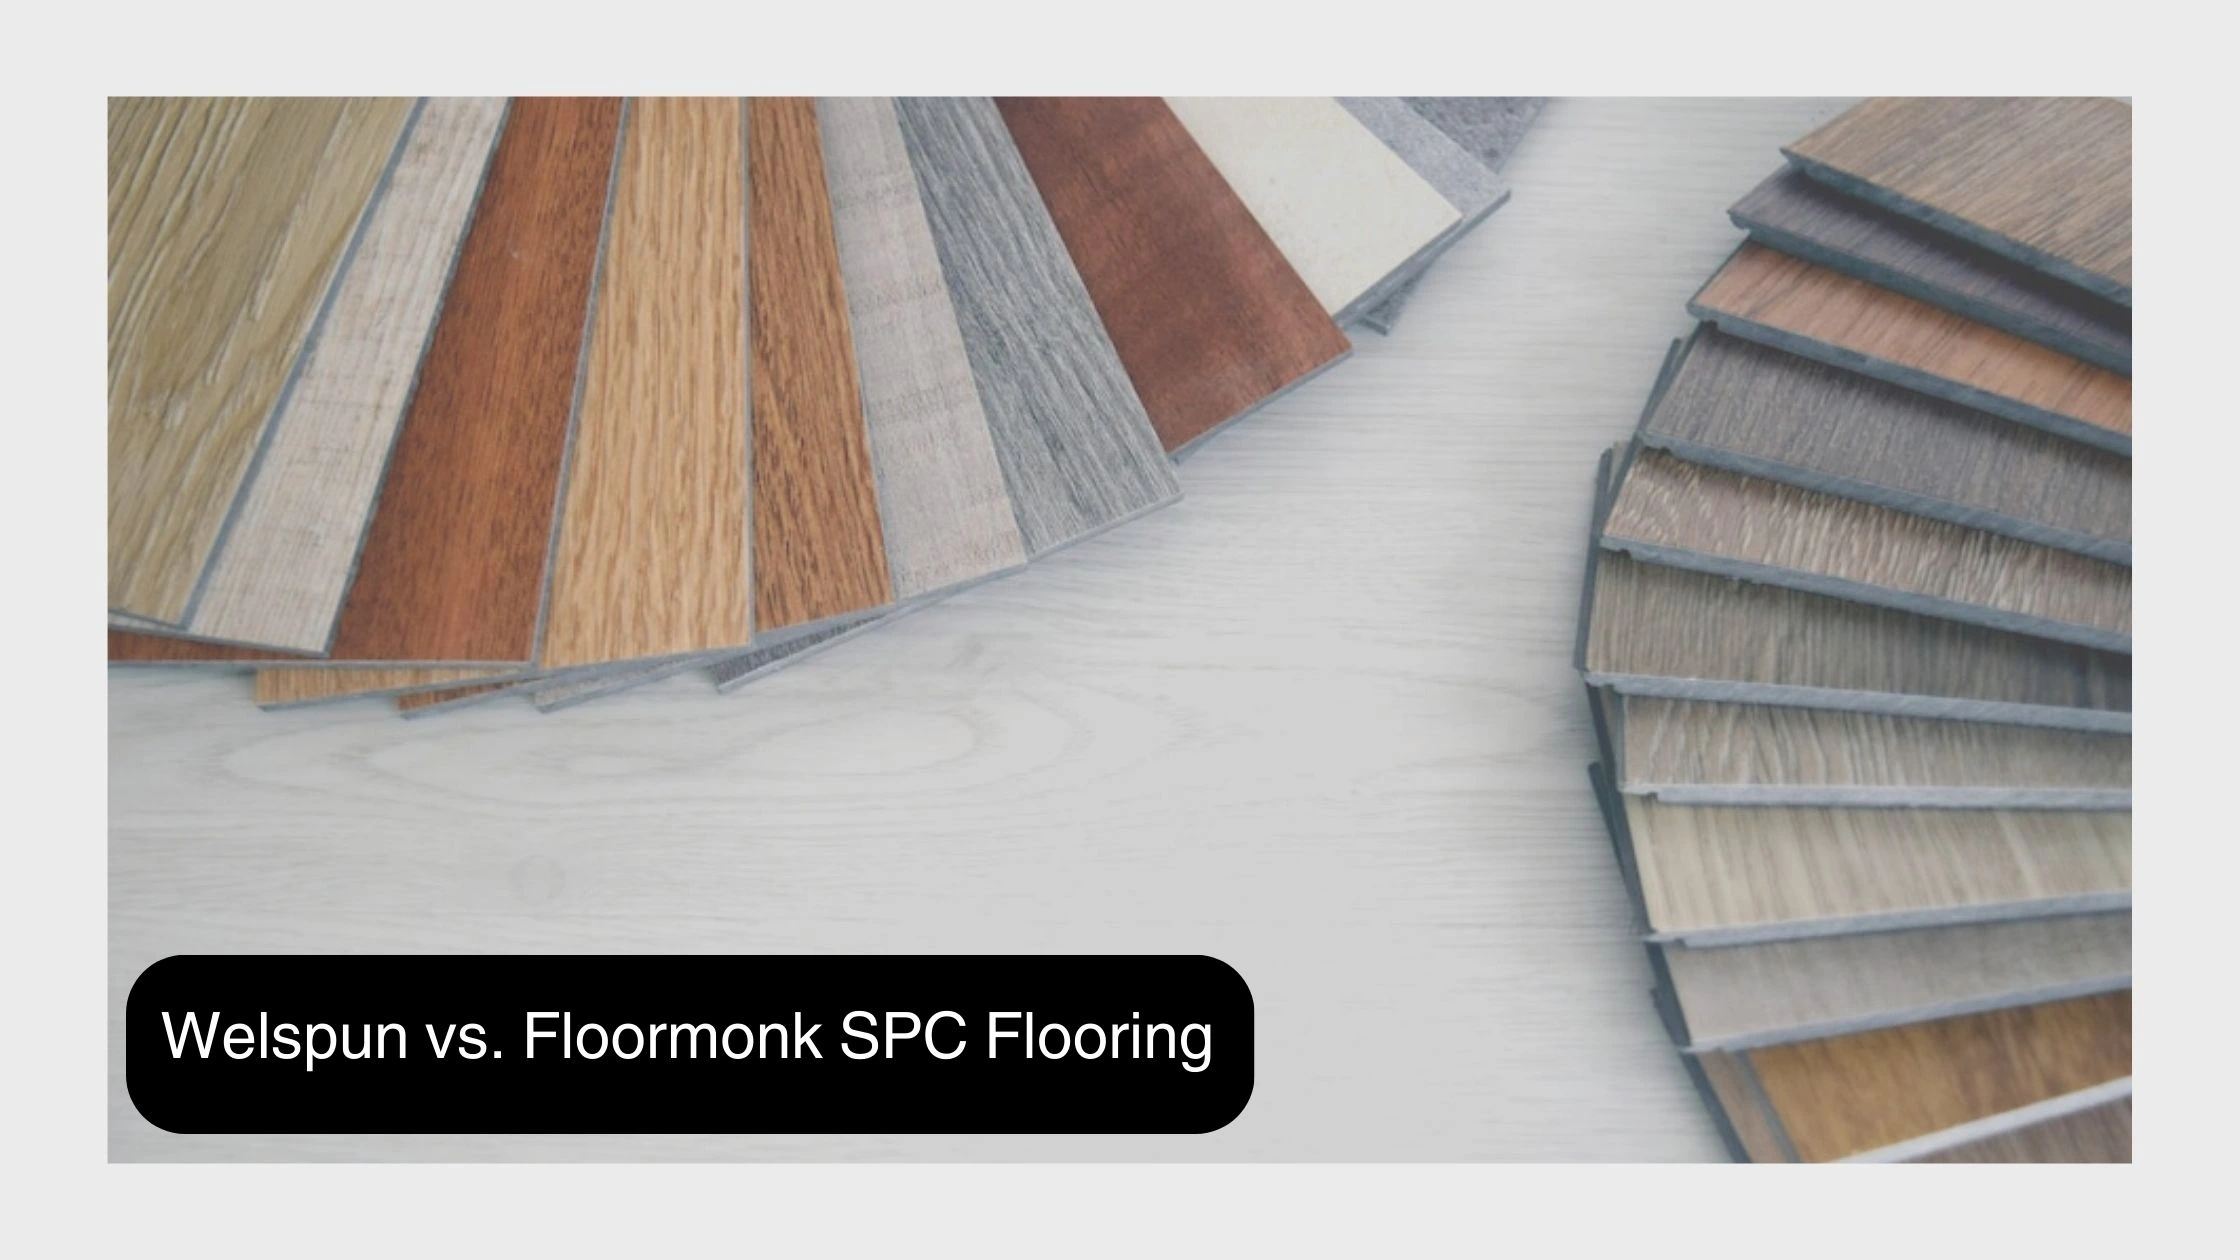 Welspun Vs. Floormonk SPC Flooring